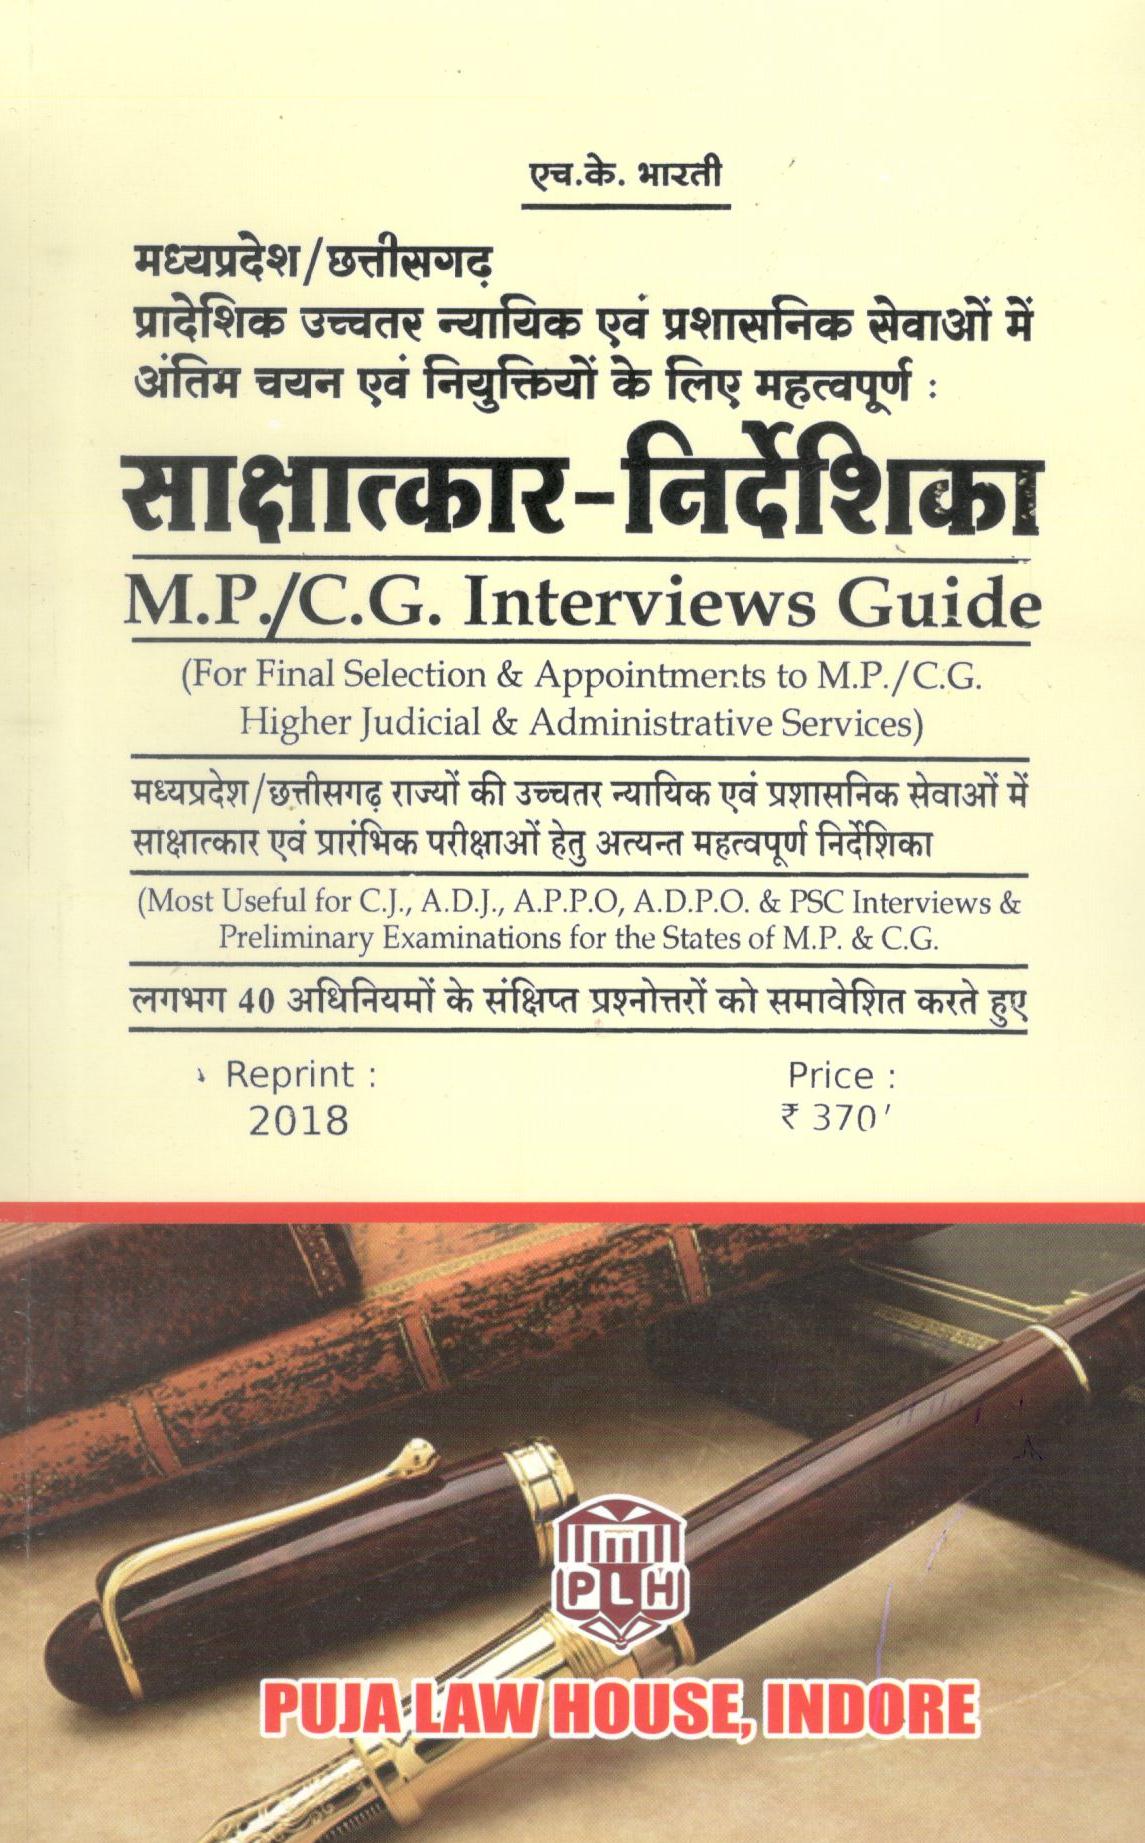 एच.के. भारती – साक्षात्कार-निर्देशिका (मध्य प्रदेश/छत्तीसगढ़ उच्चतर न्यायिक एवं  प्रशासनिक सेवाओ में अंतिम चयन एवं नियक्तिओ के लिए महत्वपूर्ण) / M.P./C.G. Interviews Guide (For Final Selection & Appointements to M.P./C.G. Higer Judicial & Administrative Services)